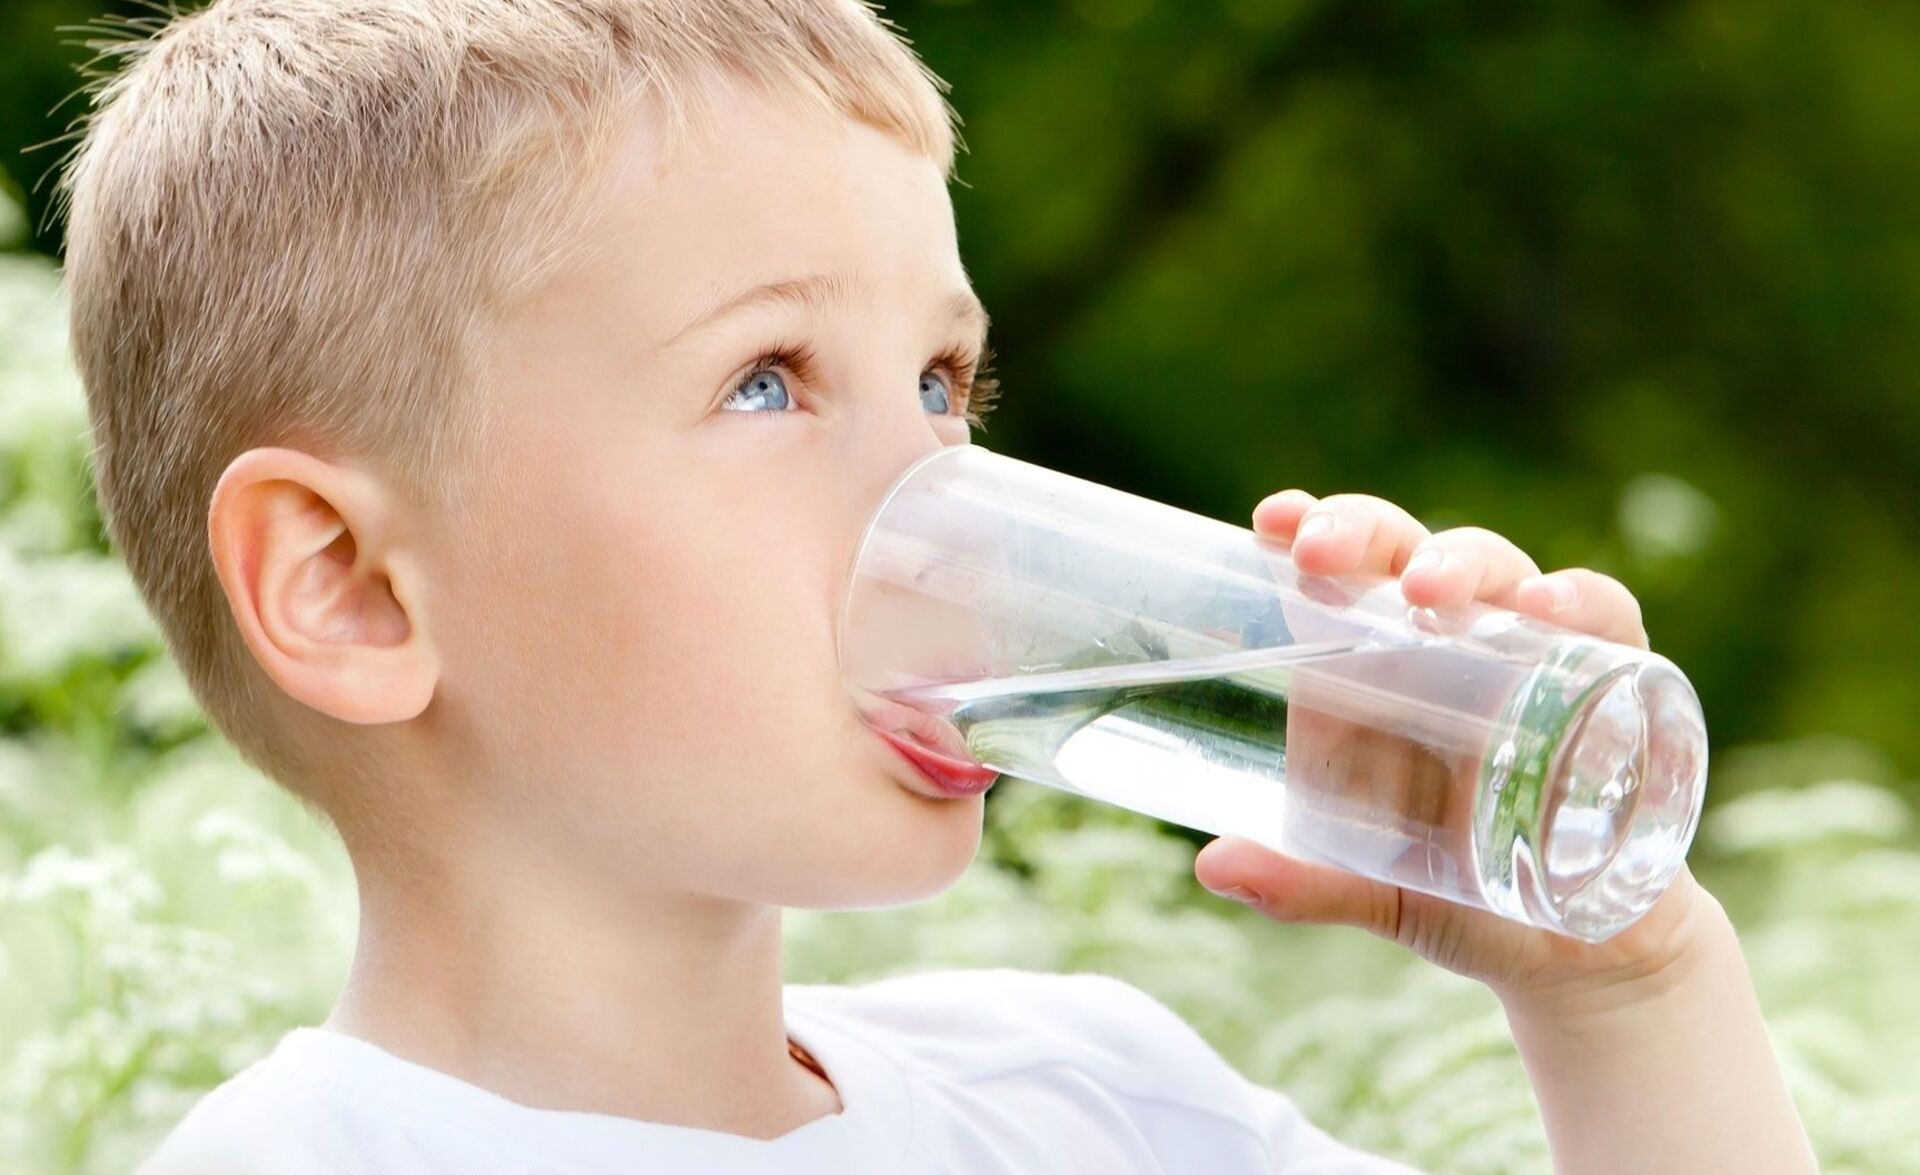 Картинки питьевой. Пить воду. Ребенок пьет воду. Человек пьет воду. Питье воды.